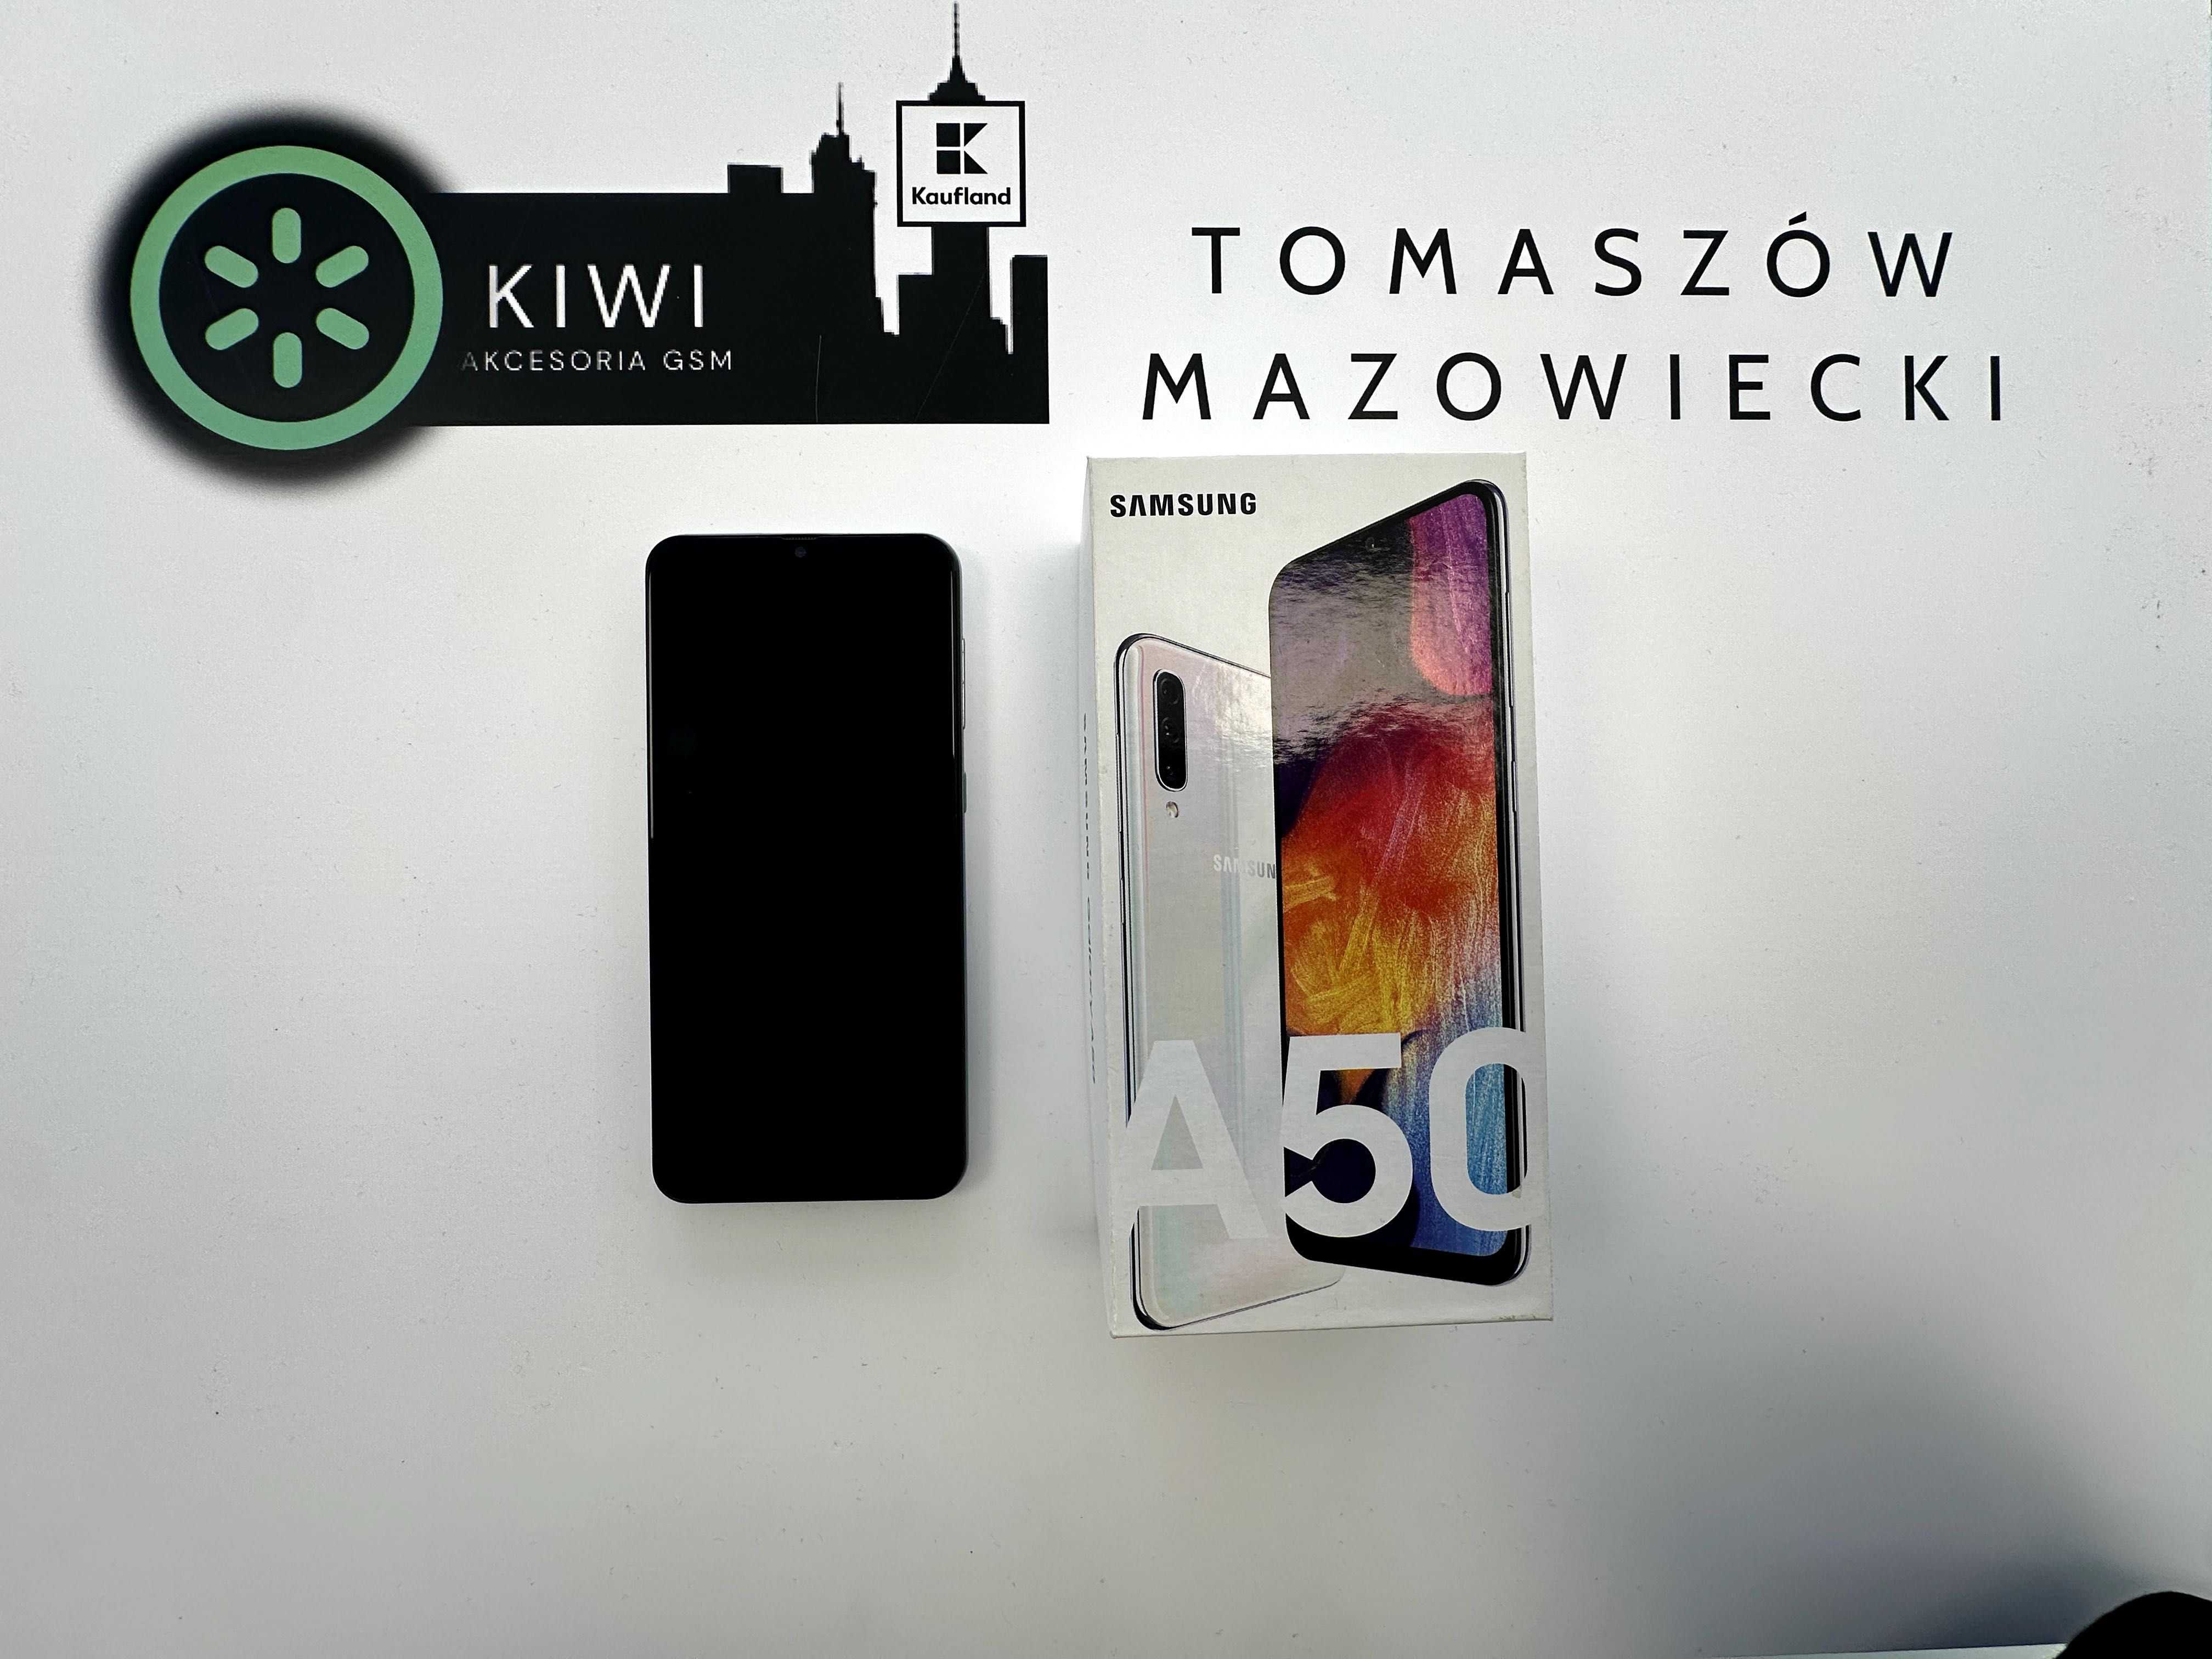 SAMSUNG A50 4GB/128GB White KIWI Sklep Tomaszów Mazowiecki 369 zł